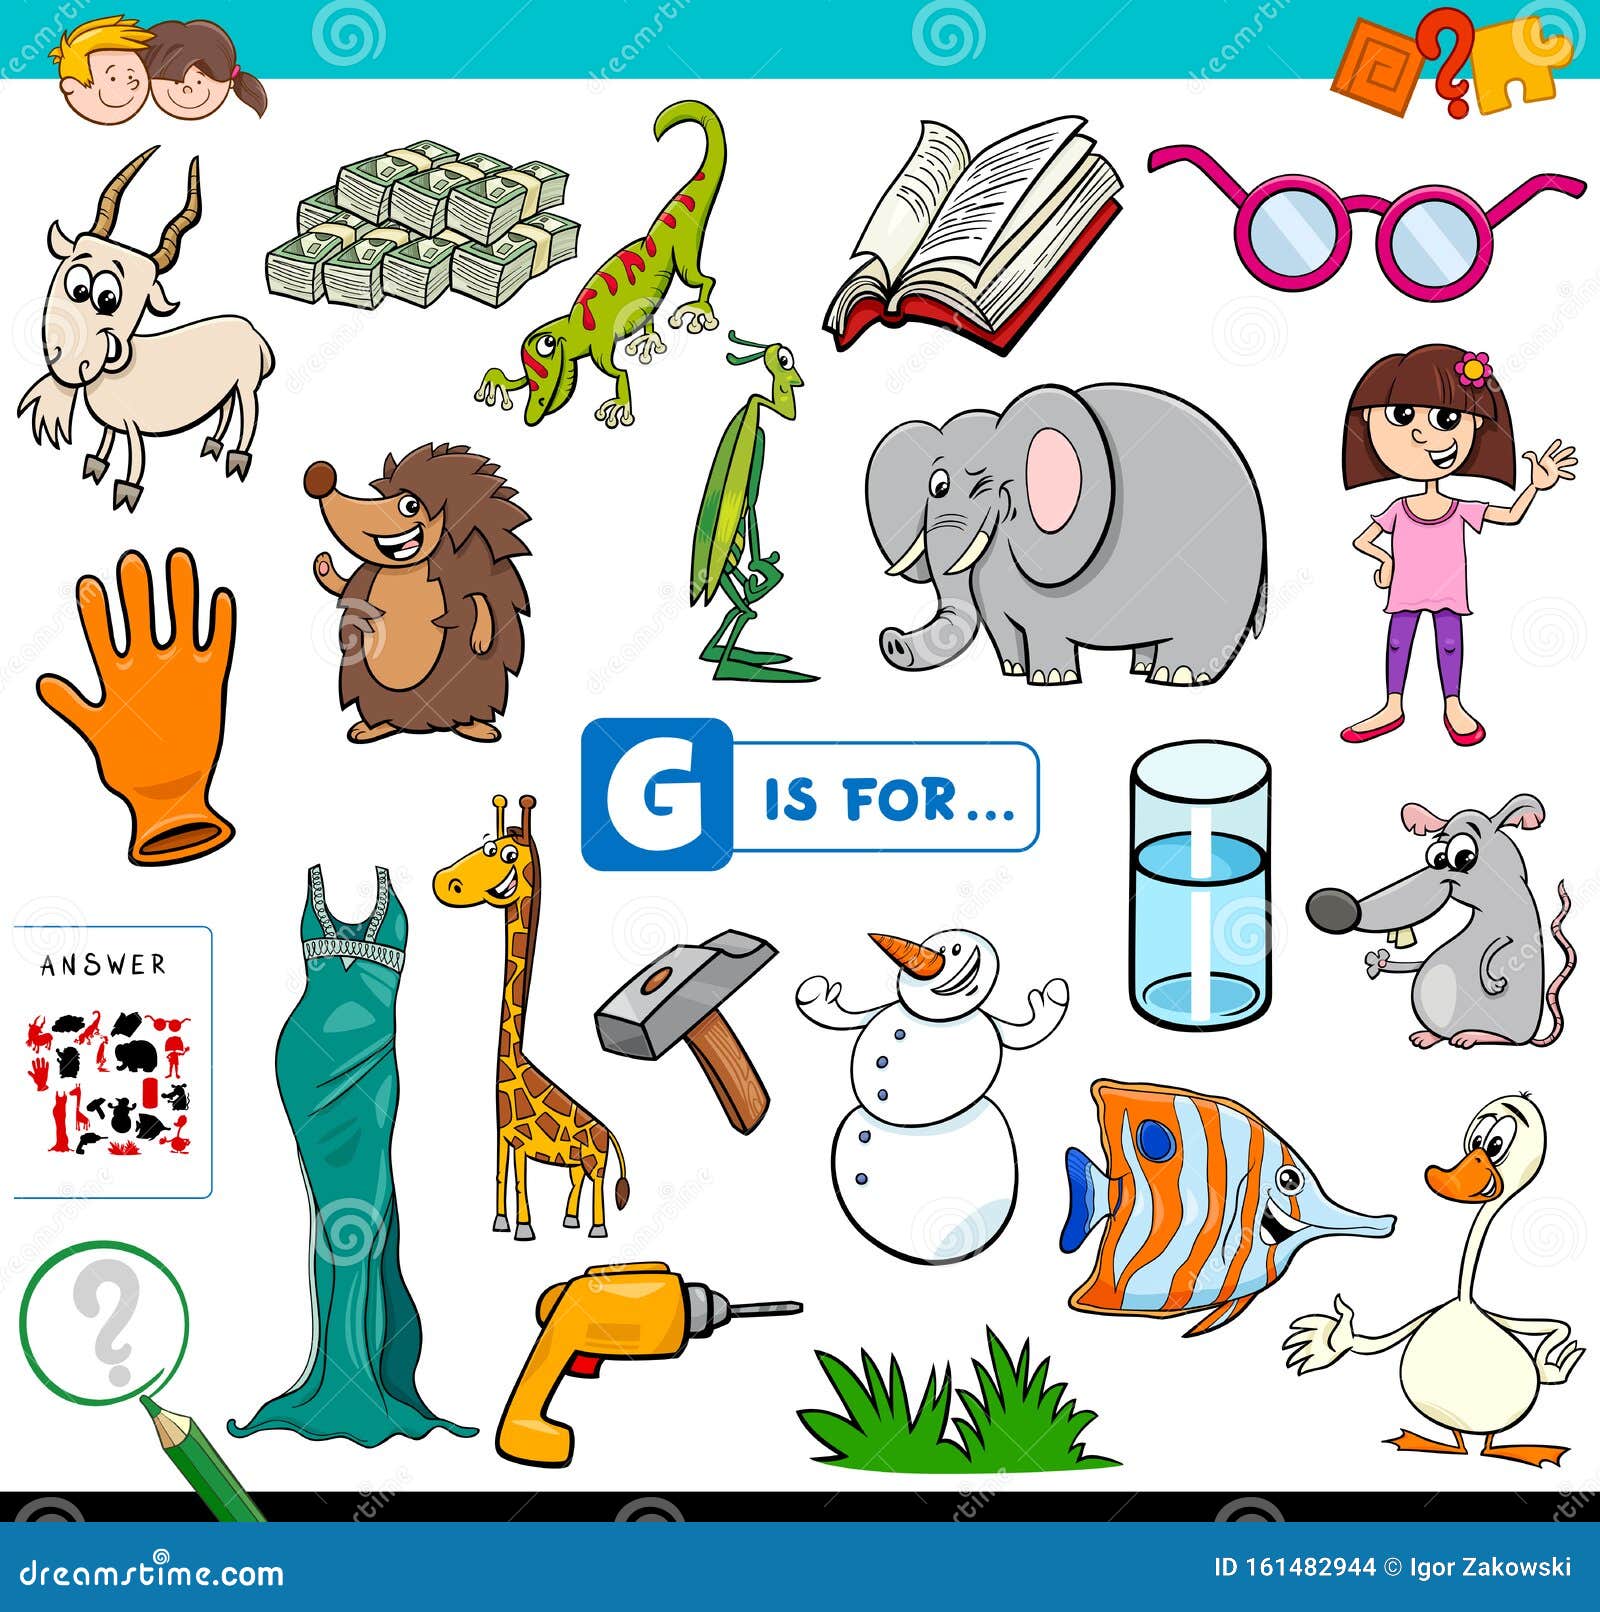 G is for Words Educational Task for Children Stock Vector ...